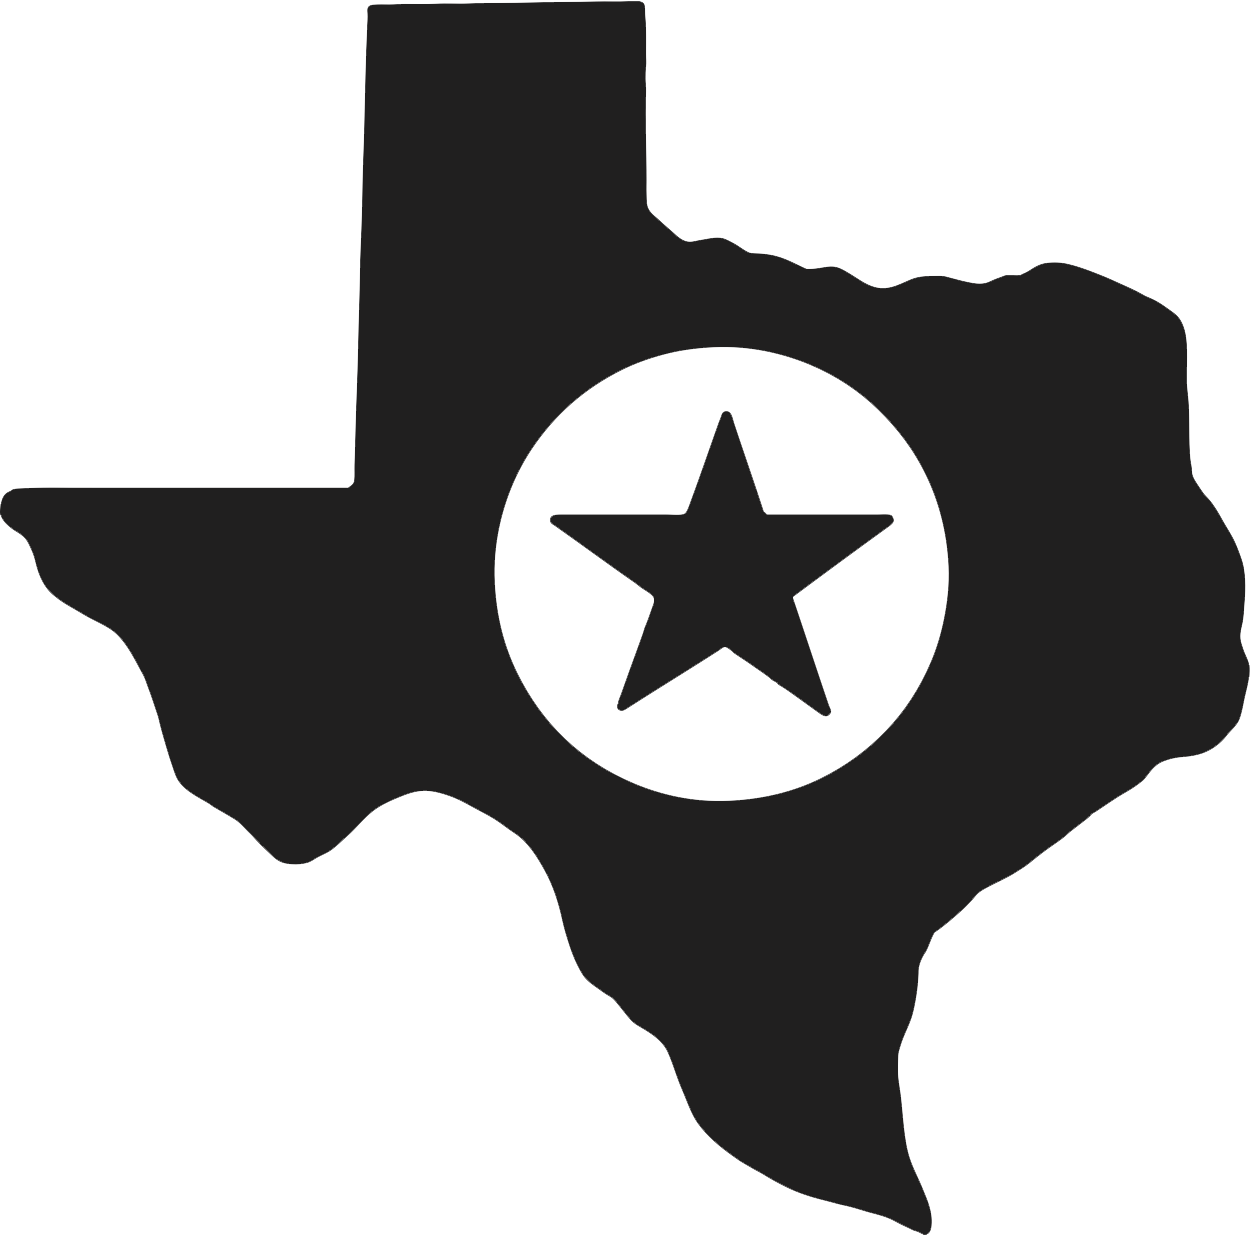 Texas DMV Certificate Application